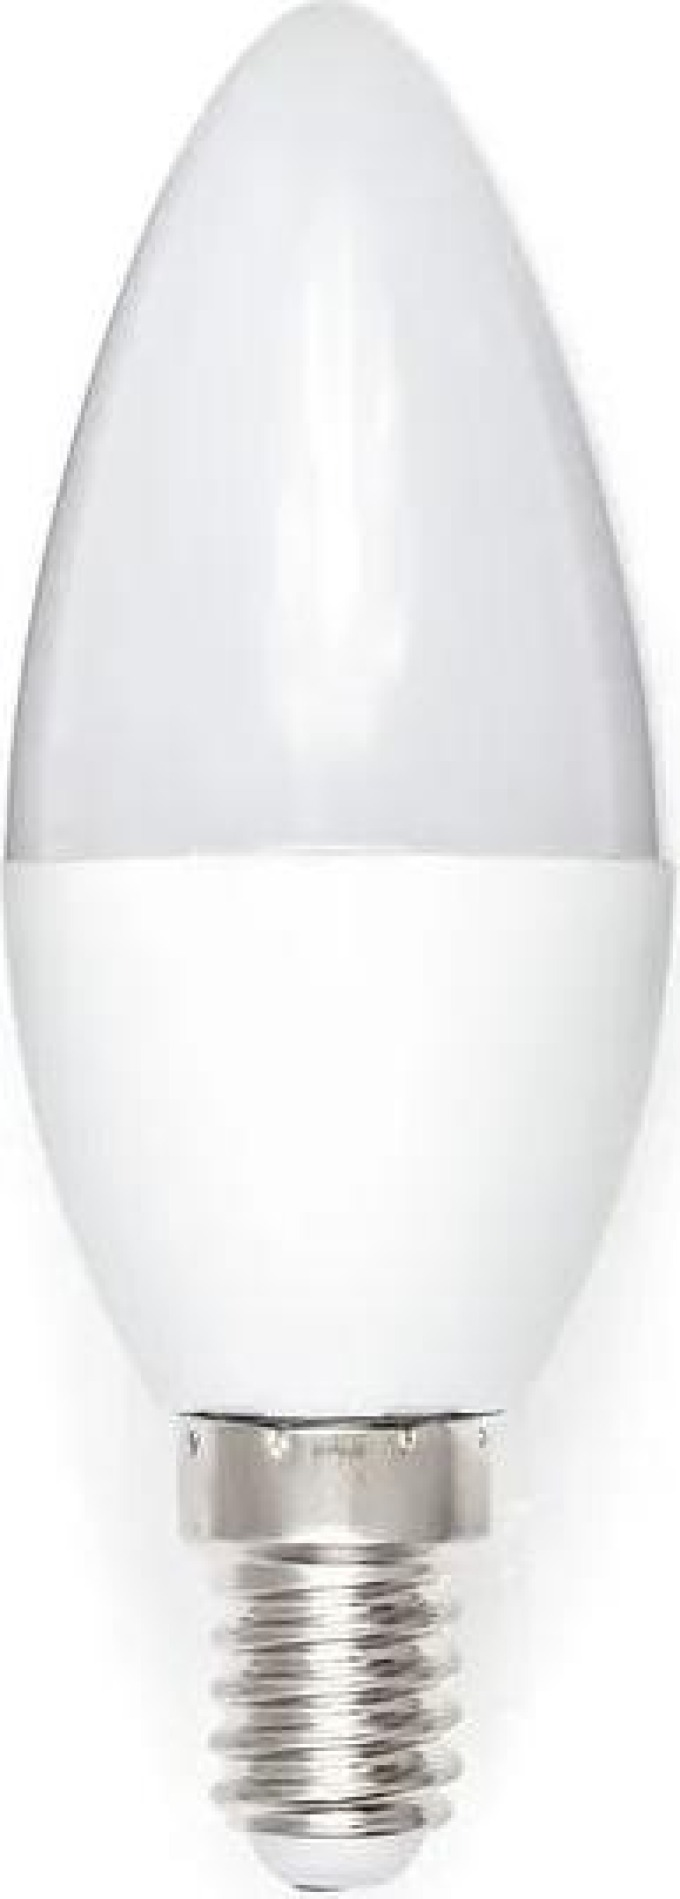 MILIO LED žárovka C37 - E14 - 3W - 250 lm - teplá bílá